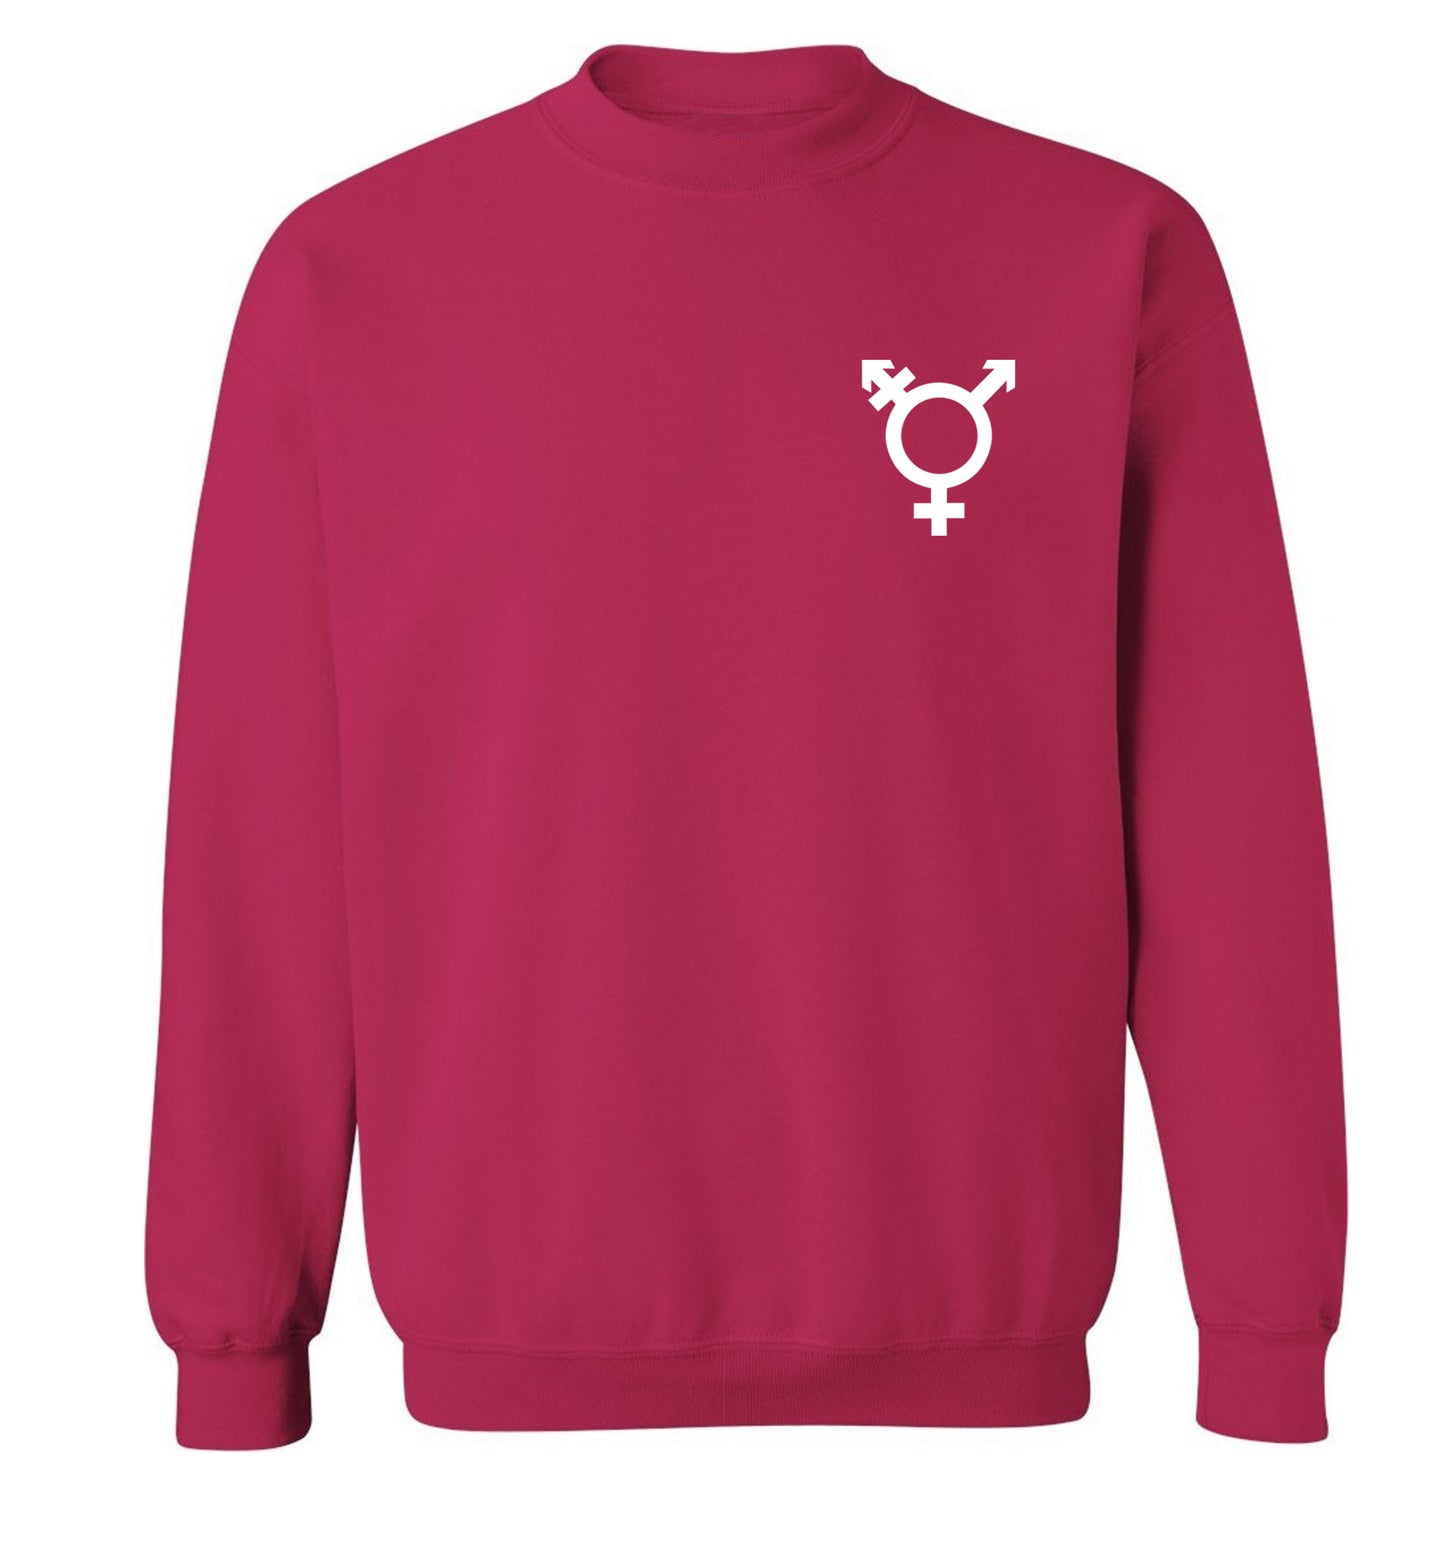 Trans gender symbol pocket Adult's unisex pink Sweater 2XL